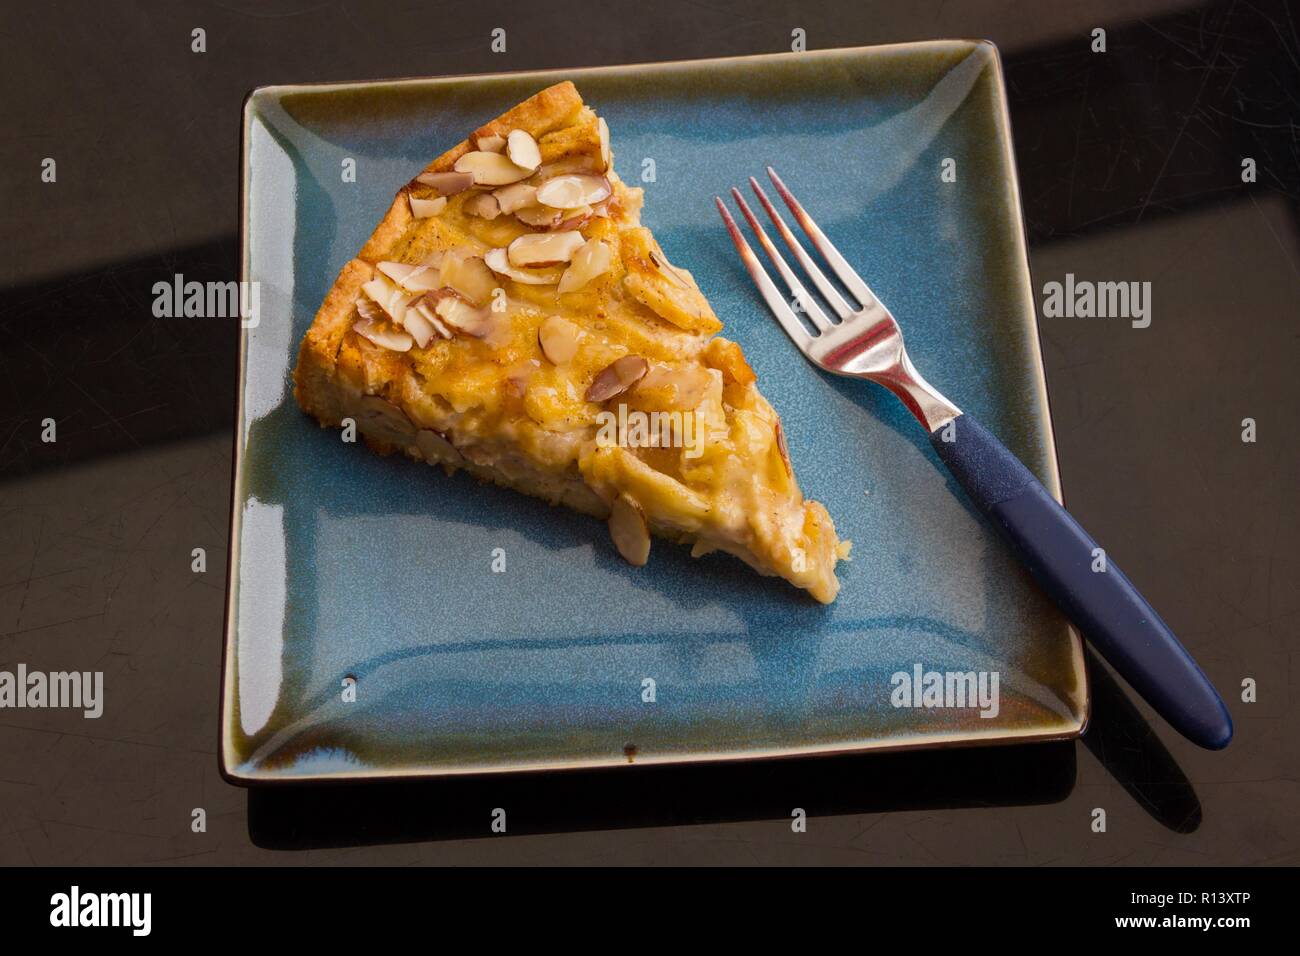 Vue de dessus du gâteau savoureux aux amandes apple kuchen et la fourche sur bleu de la plaque carrée. Traiteur Restaurant concept dessert Banque D'Images